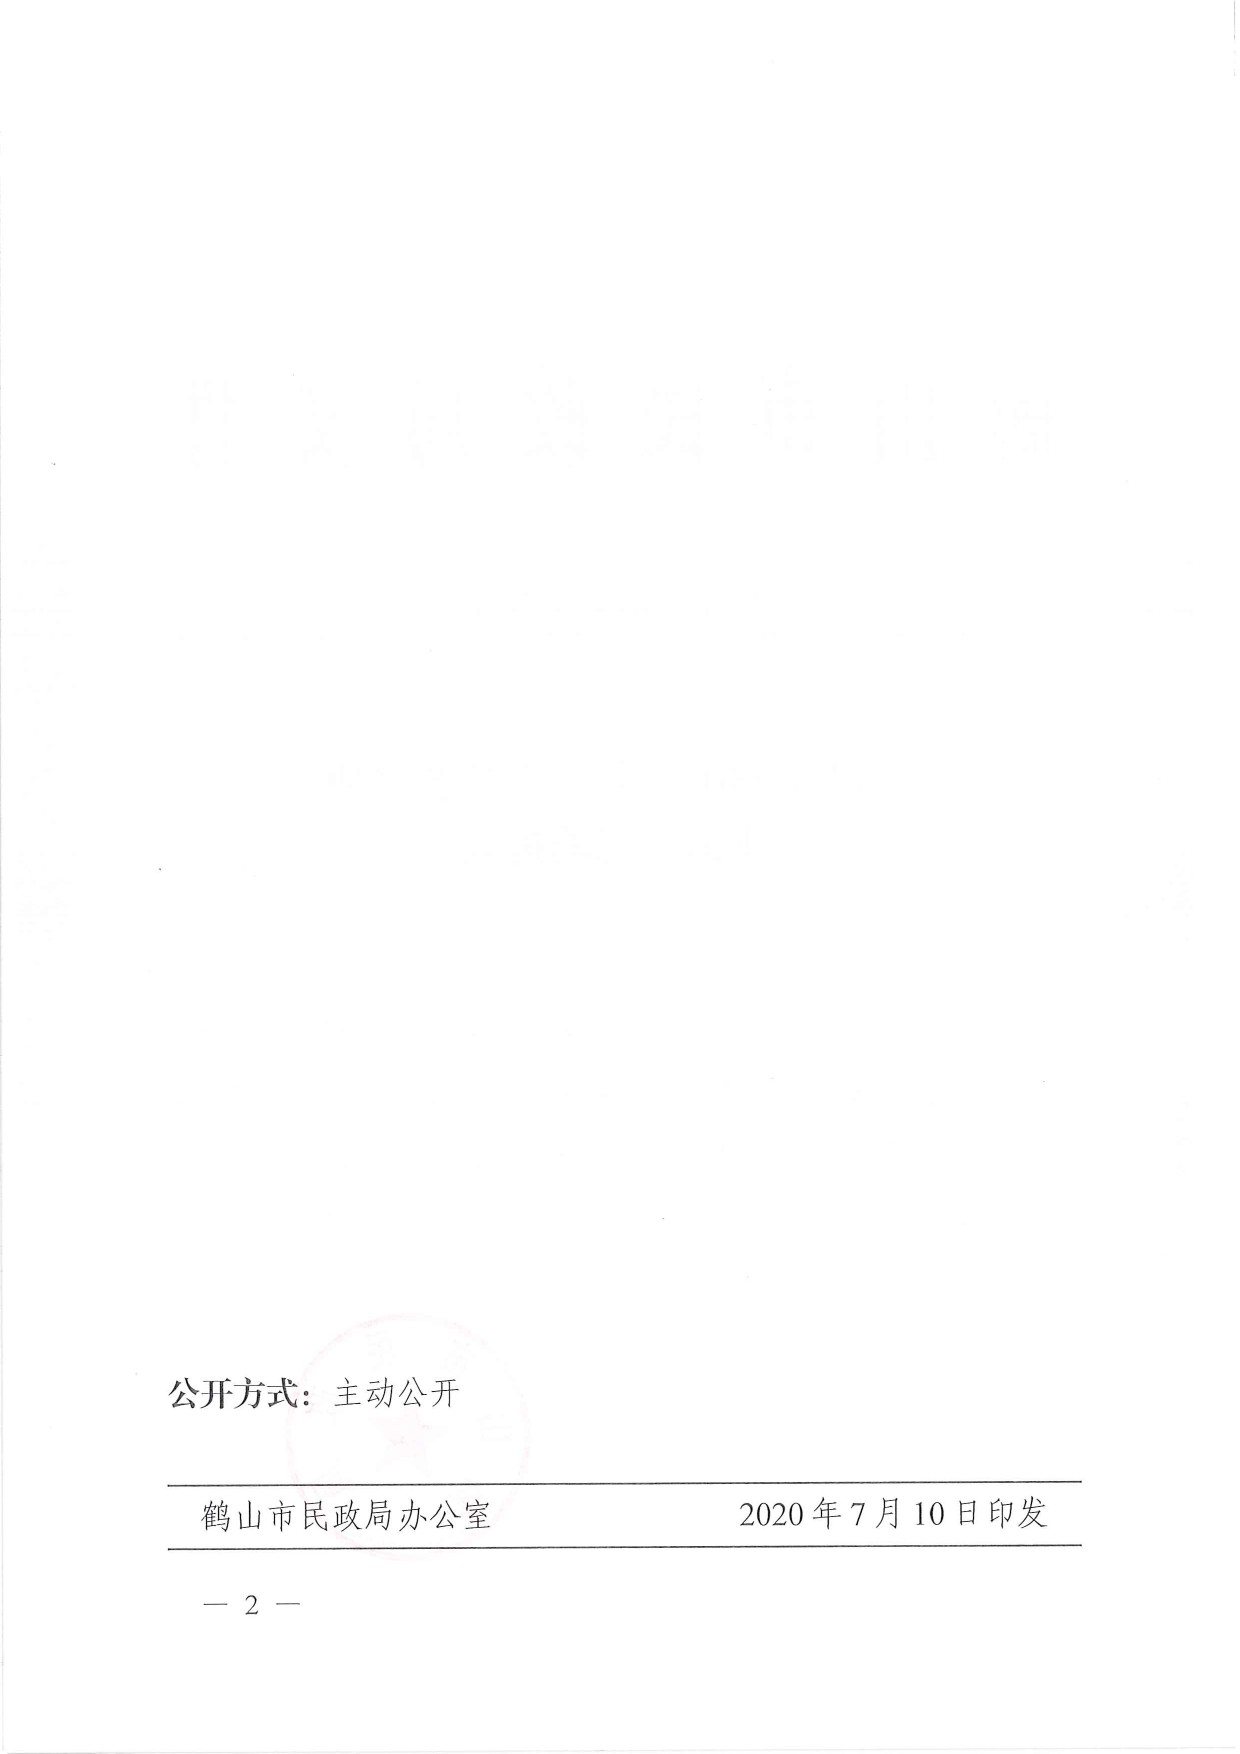 鹤民社〔2020〕33号关于准予鹤山市职工文化艺术协会注销登记的批复-4.jpg